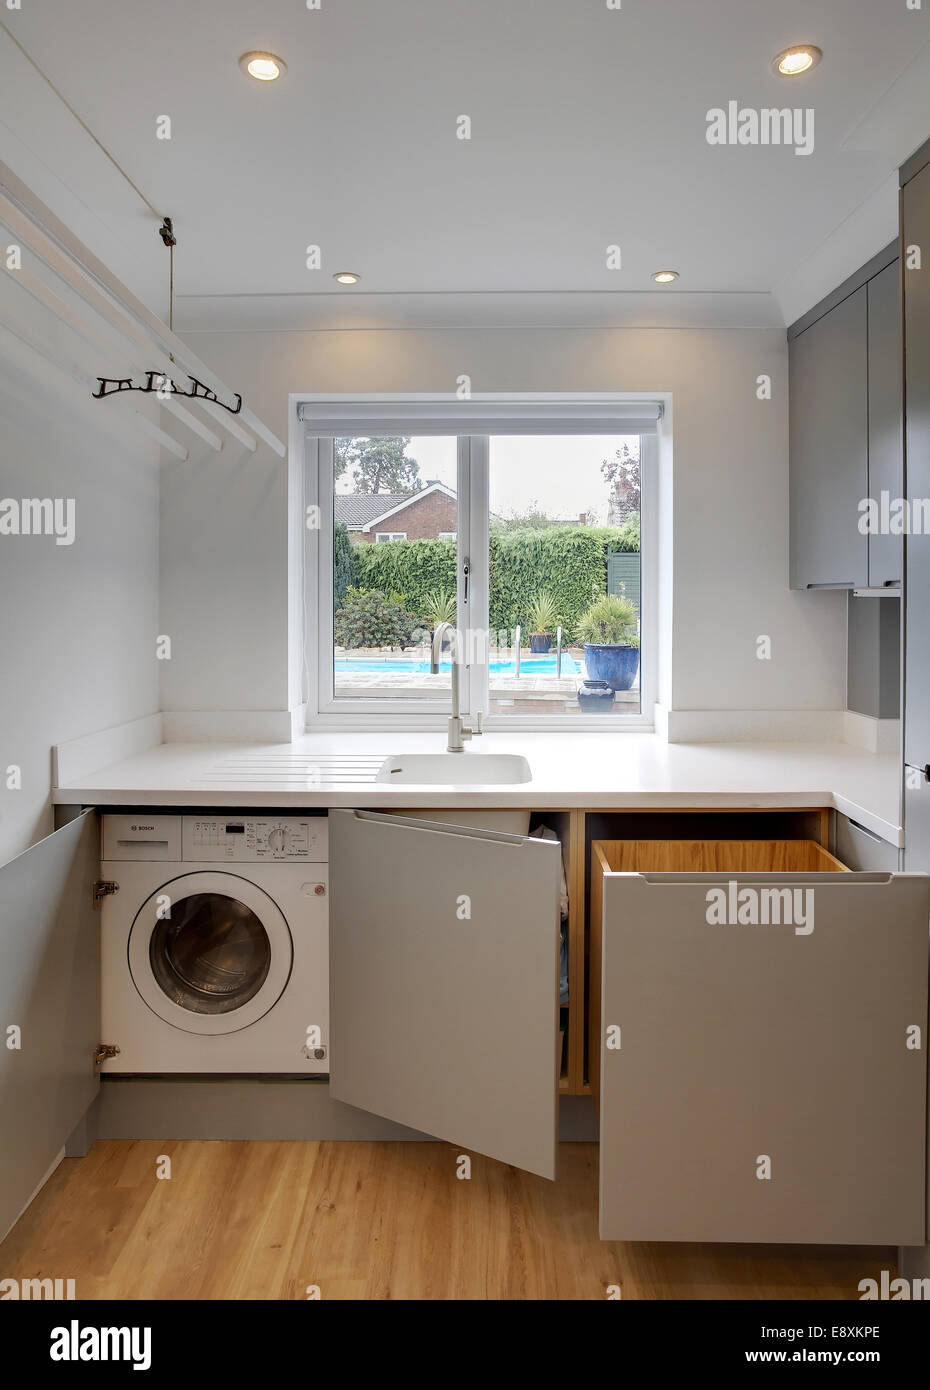 Ein Abstellraum in einem Haus im Vereinigten Königreich zeigt eine  Waschmaschine und Abfallbehälter Stockfotografie - Alamy